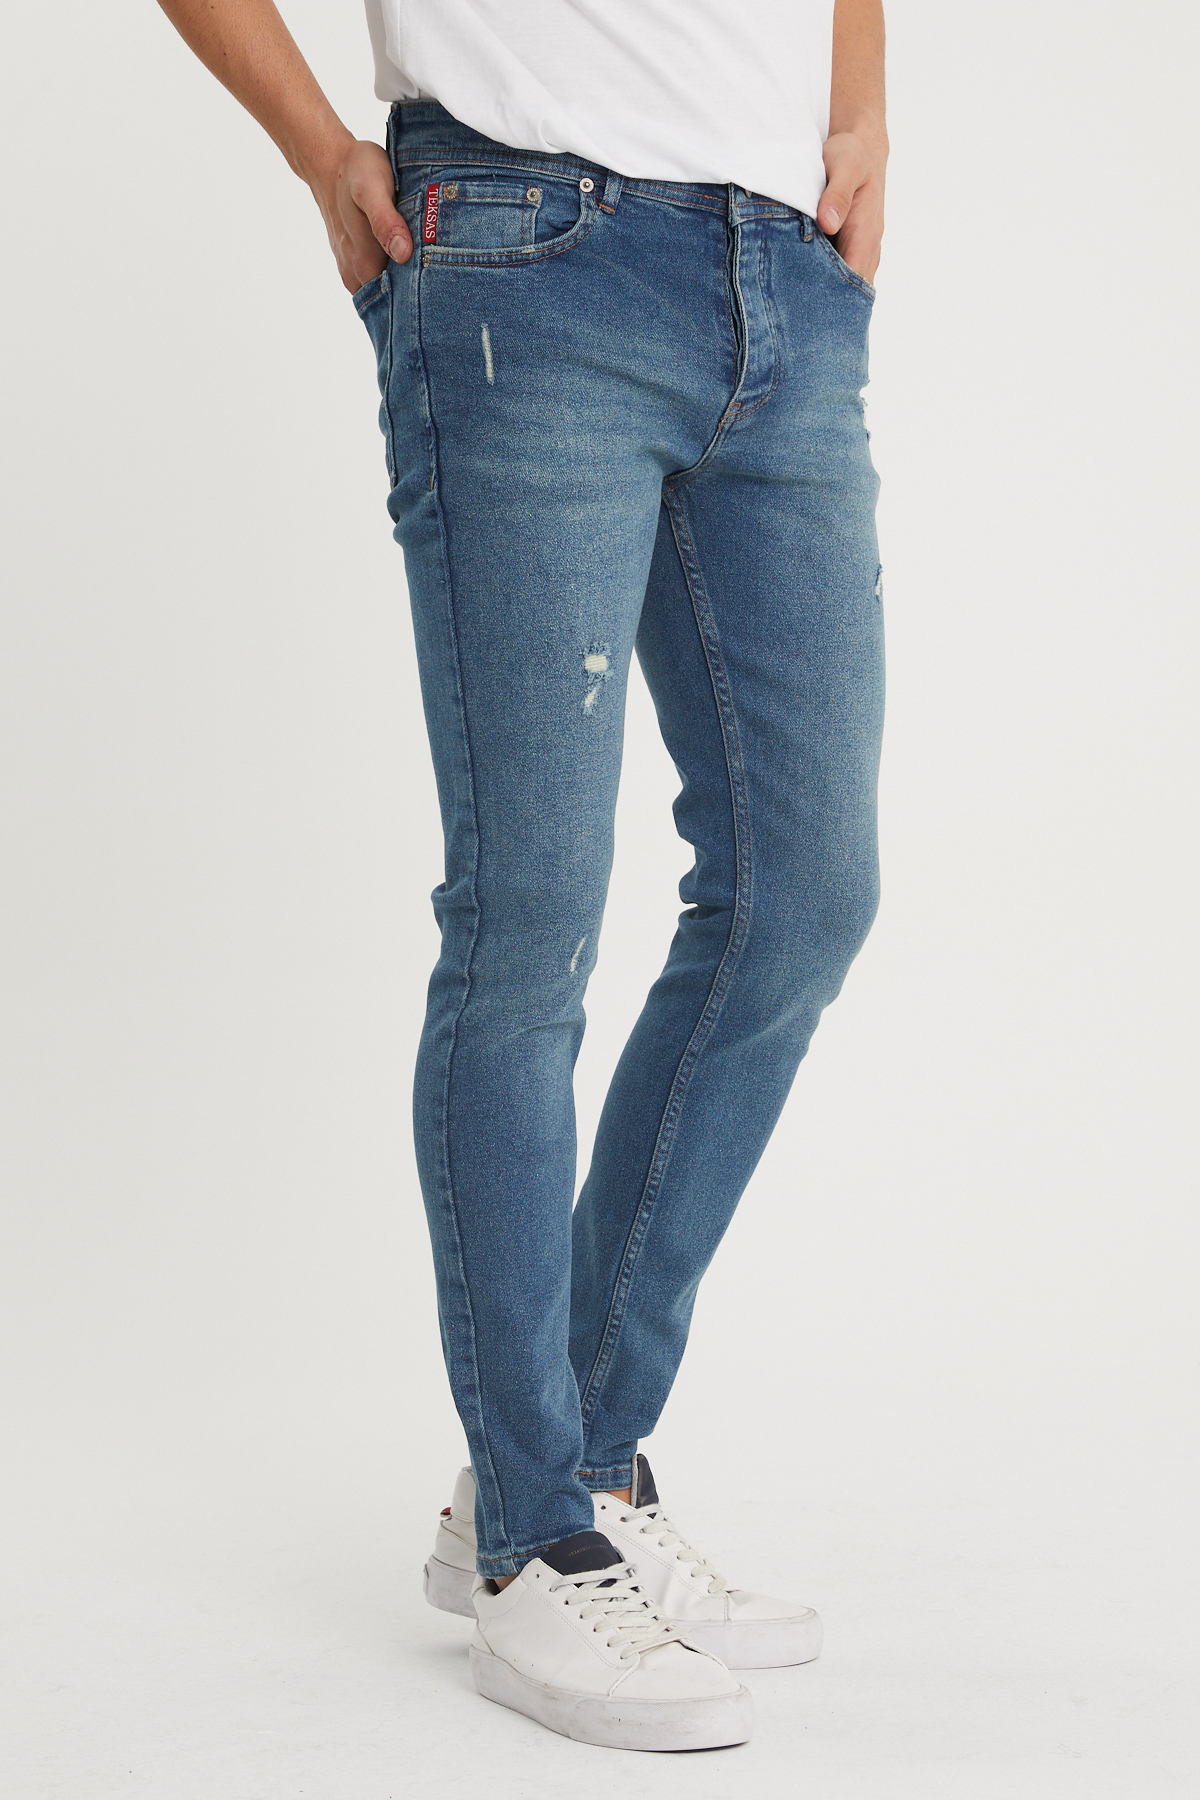 Mavi Slim Fit Jean Pantolon 1KXE5-44352-12 - 1